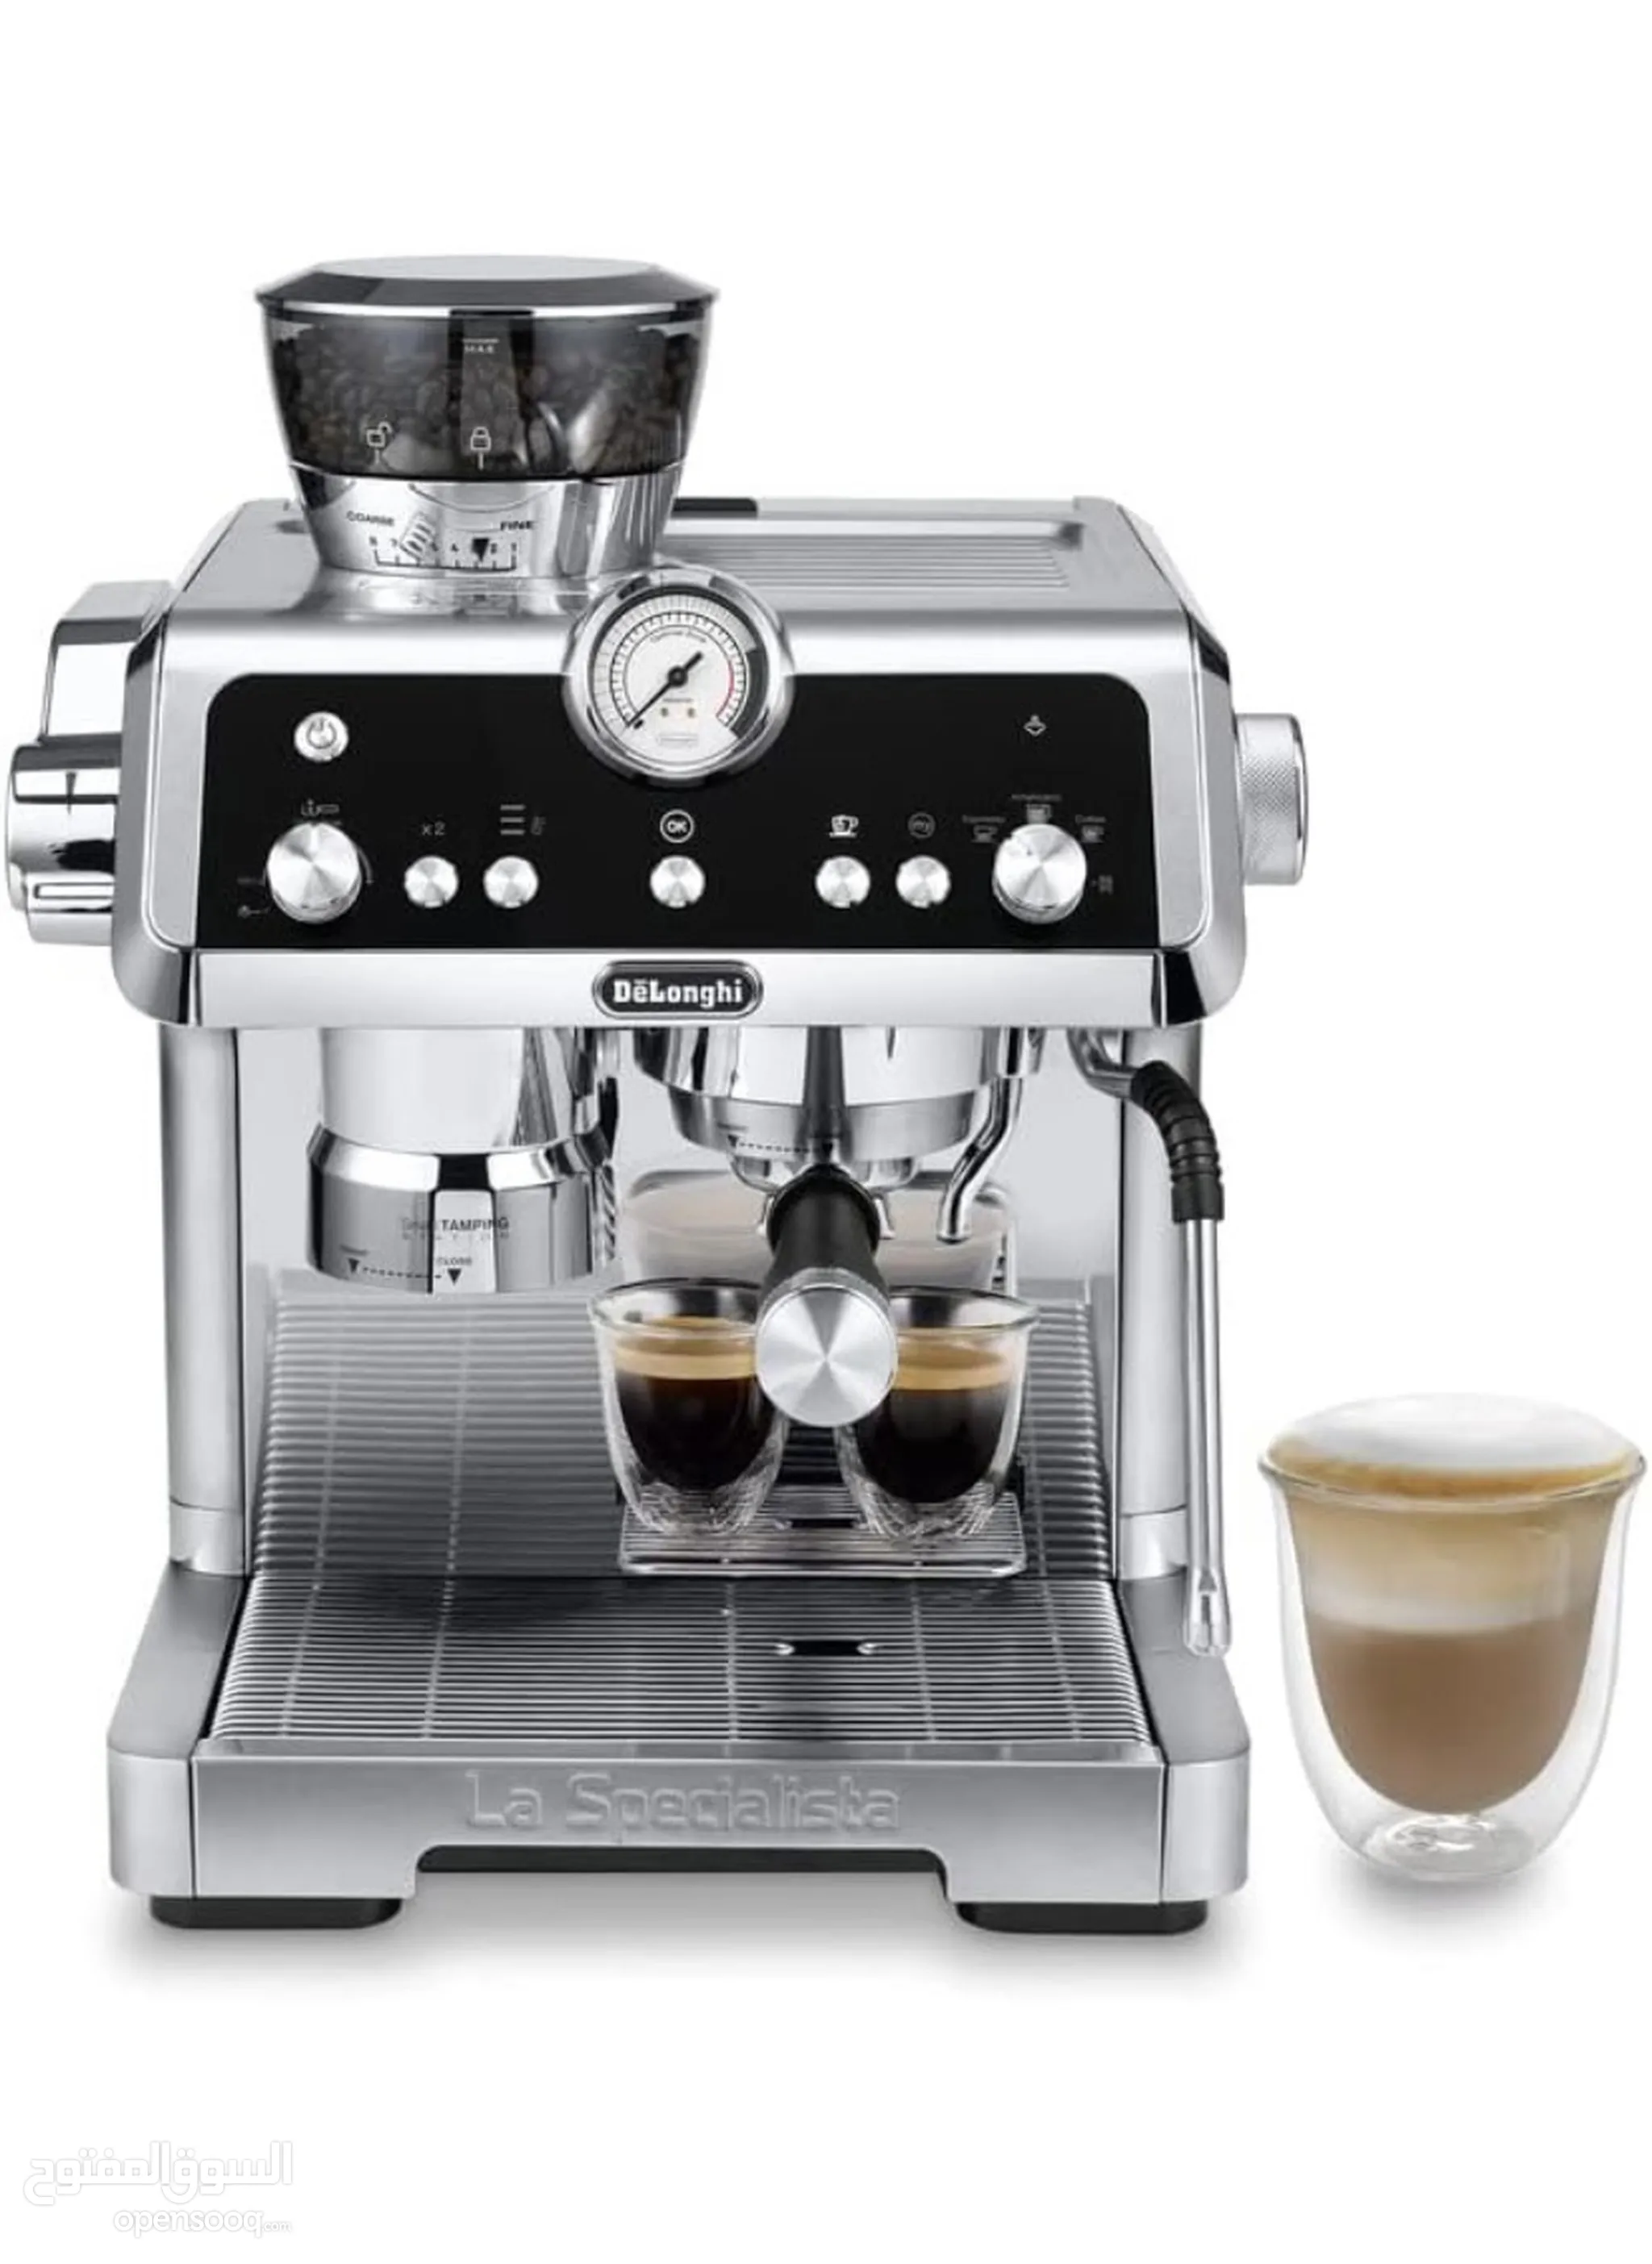 ماكينات صنع القهوة للبيع في دبي : افضل سعر | السوق المفتوح